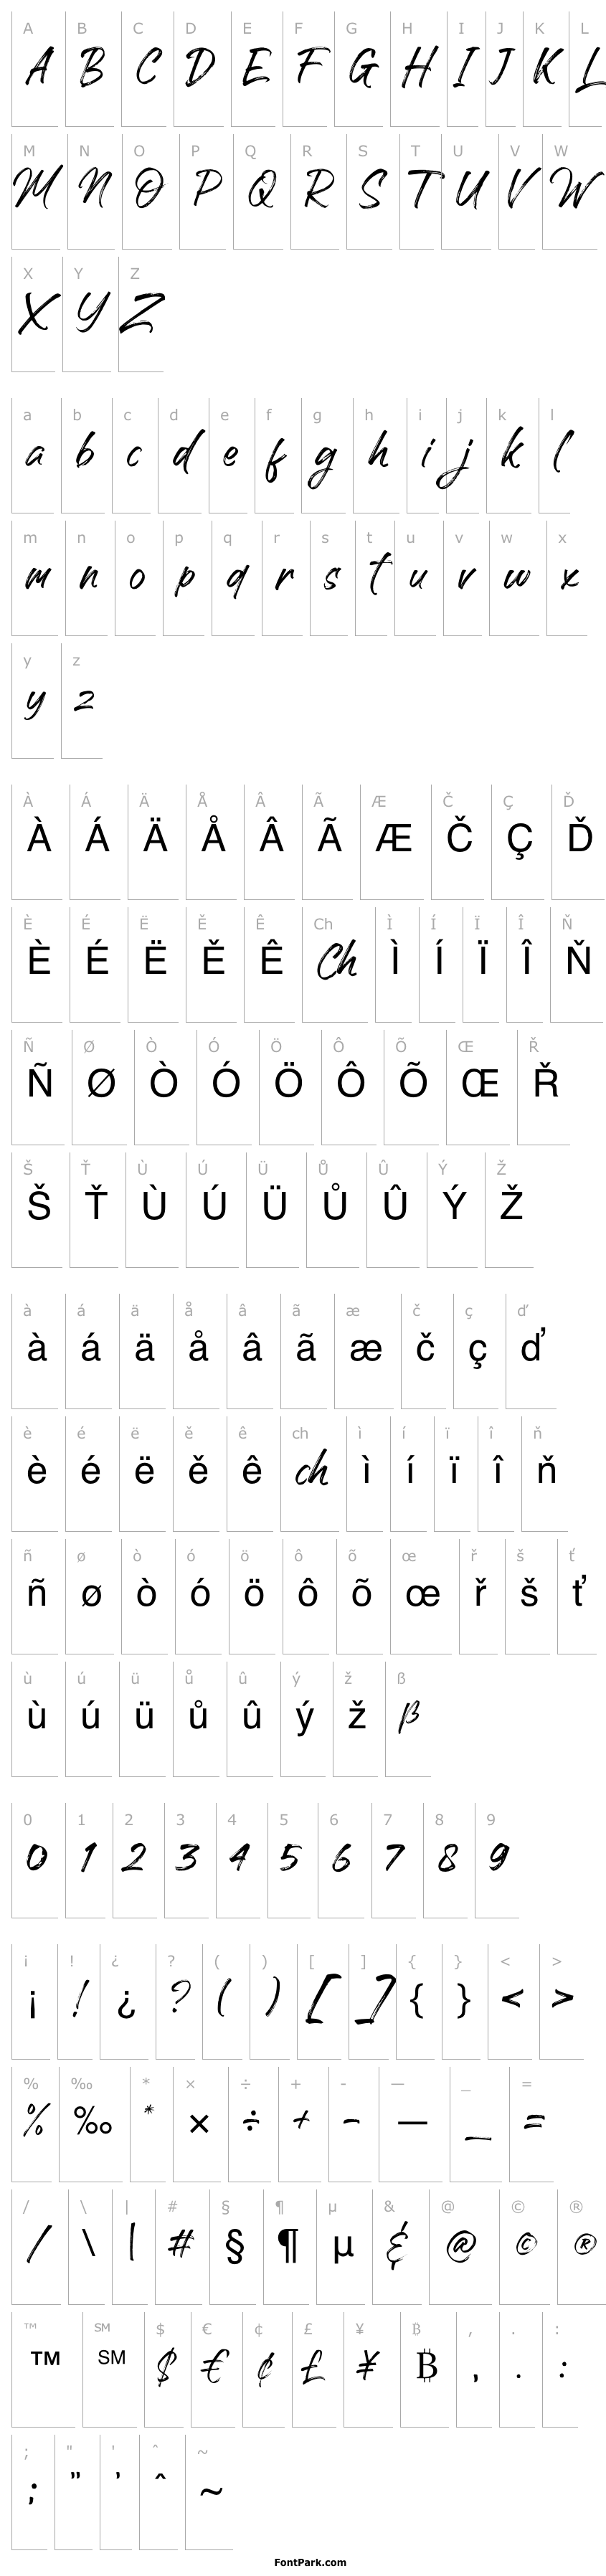 Overview Handscript